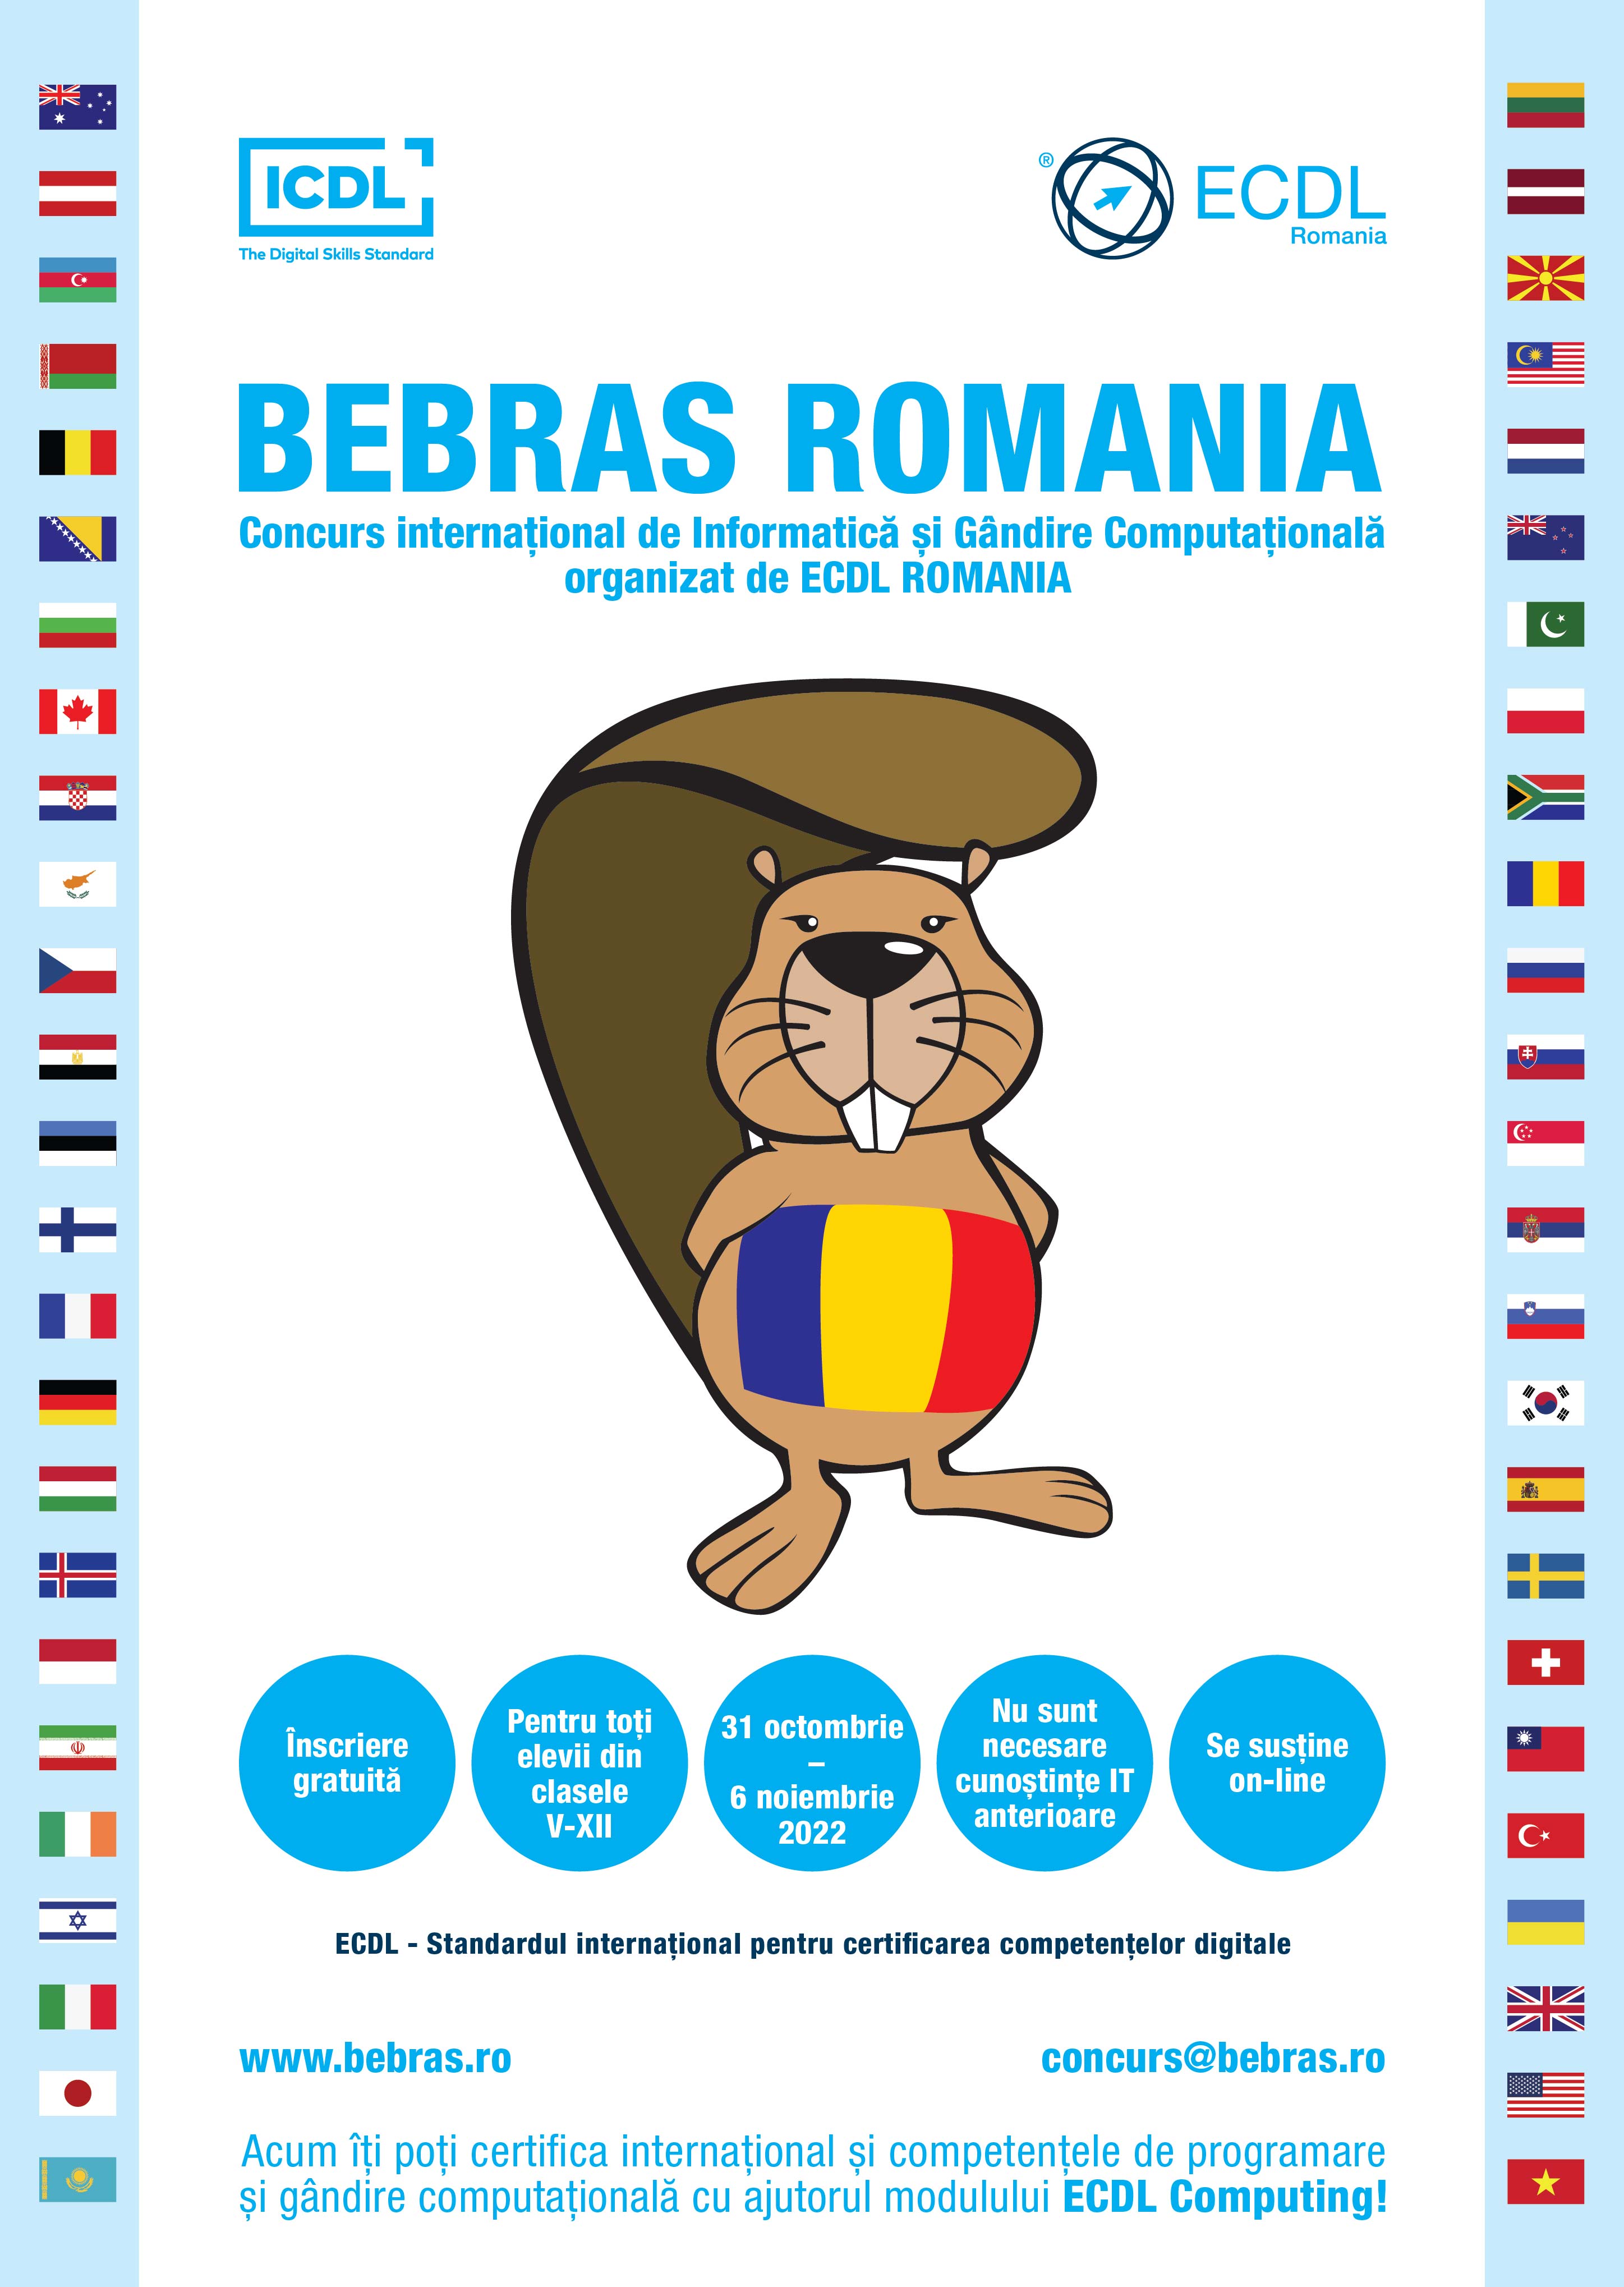 A început Săptămâna de programare creativă BEBRAS România